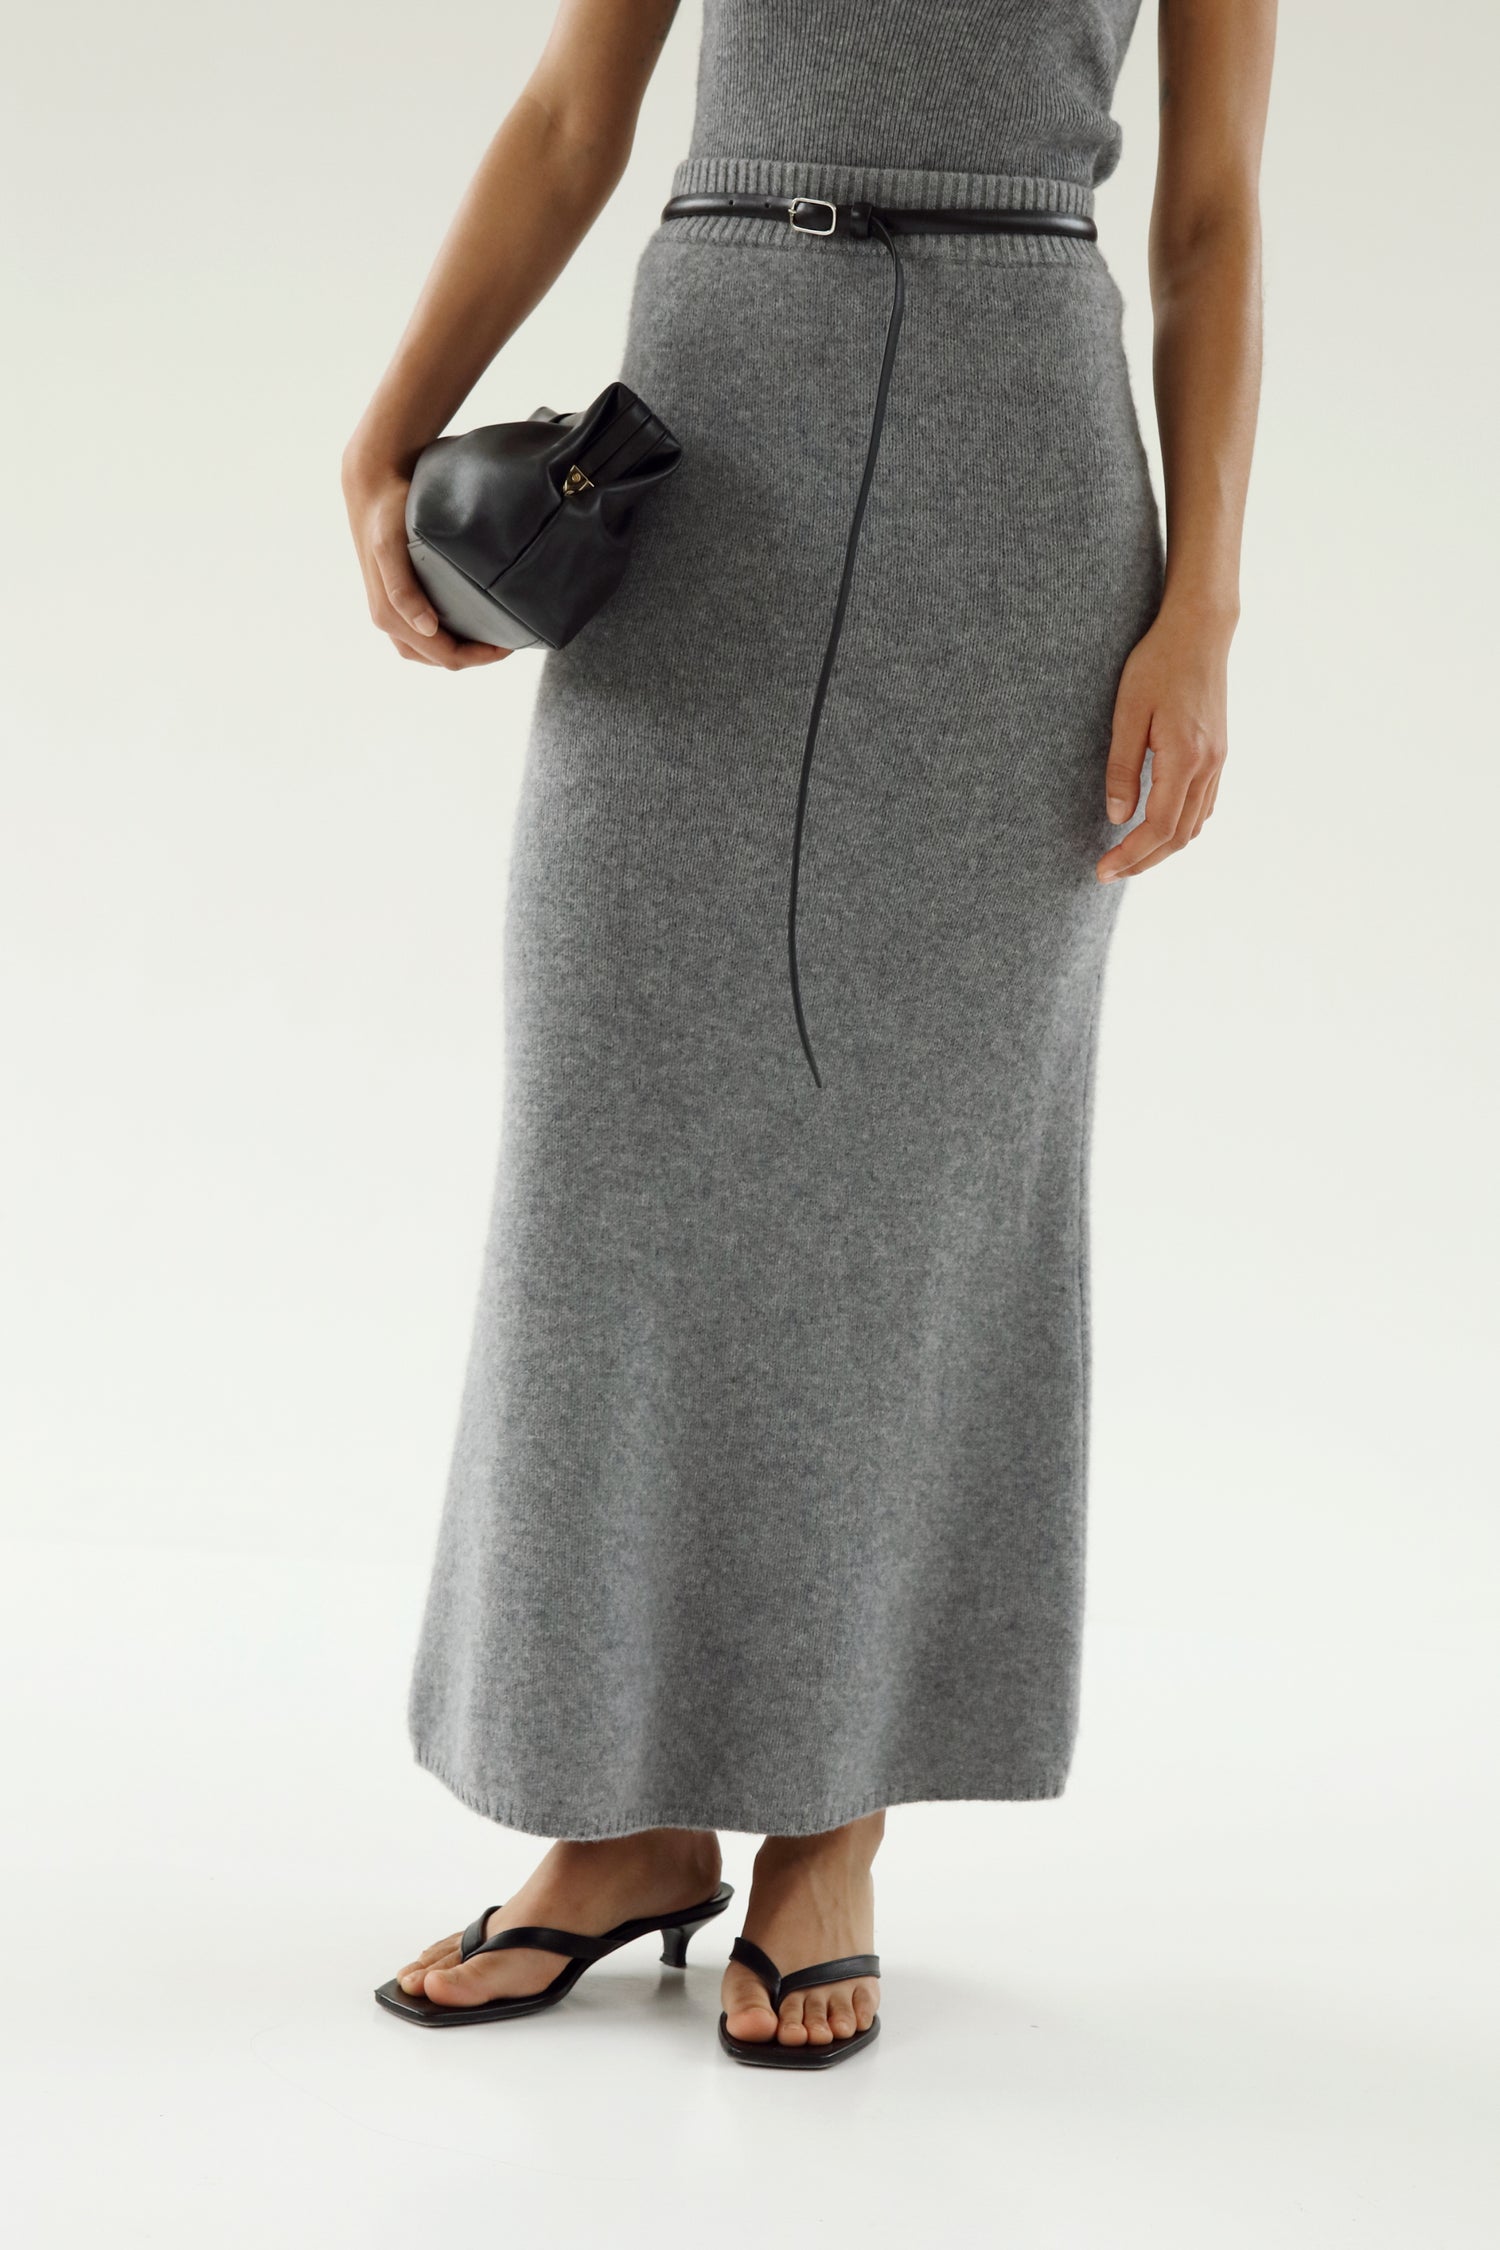 Umi Cashmere Skirt, grey